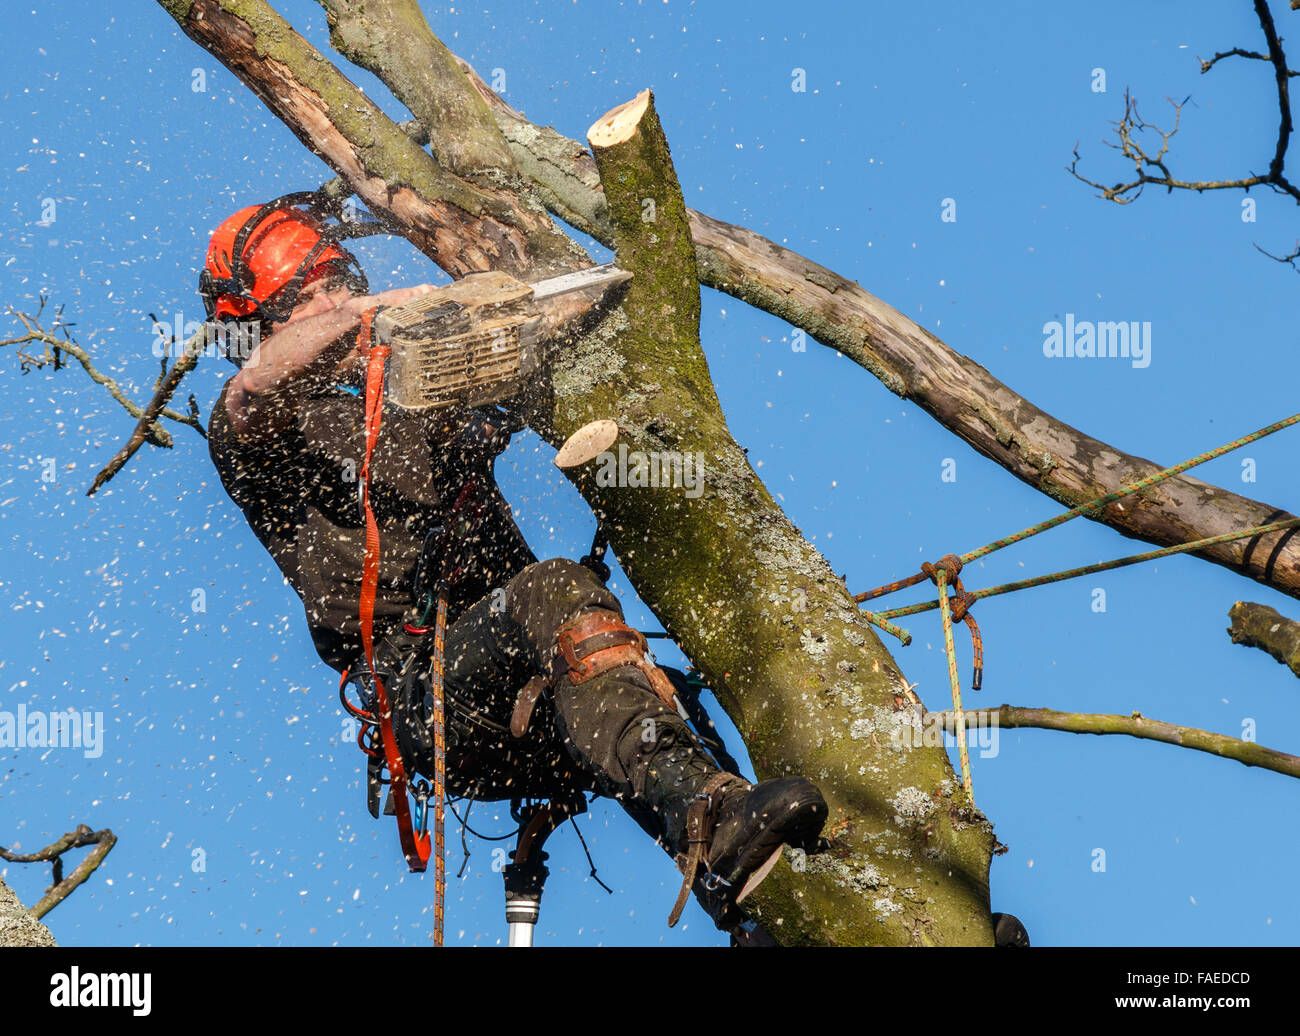 Kettensäge im Einsatz durch ein Baumpfleger hoch oben in einem Baum wird gefällt.  Sägemehl und Späne fliegen. Ein Baum-Zweig wird mit einer Kettensäge geschnitten werden Stockfoto